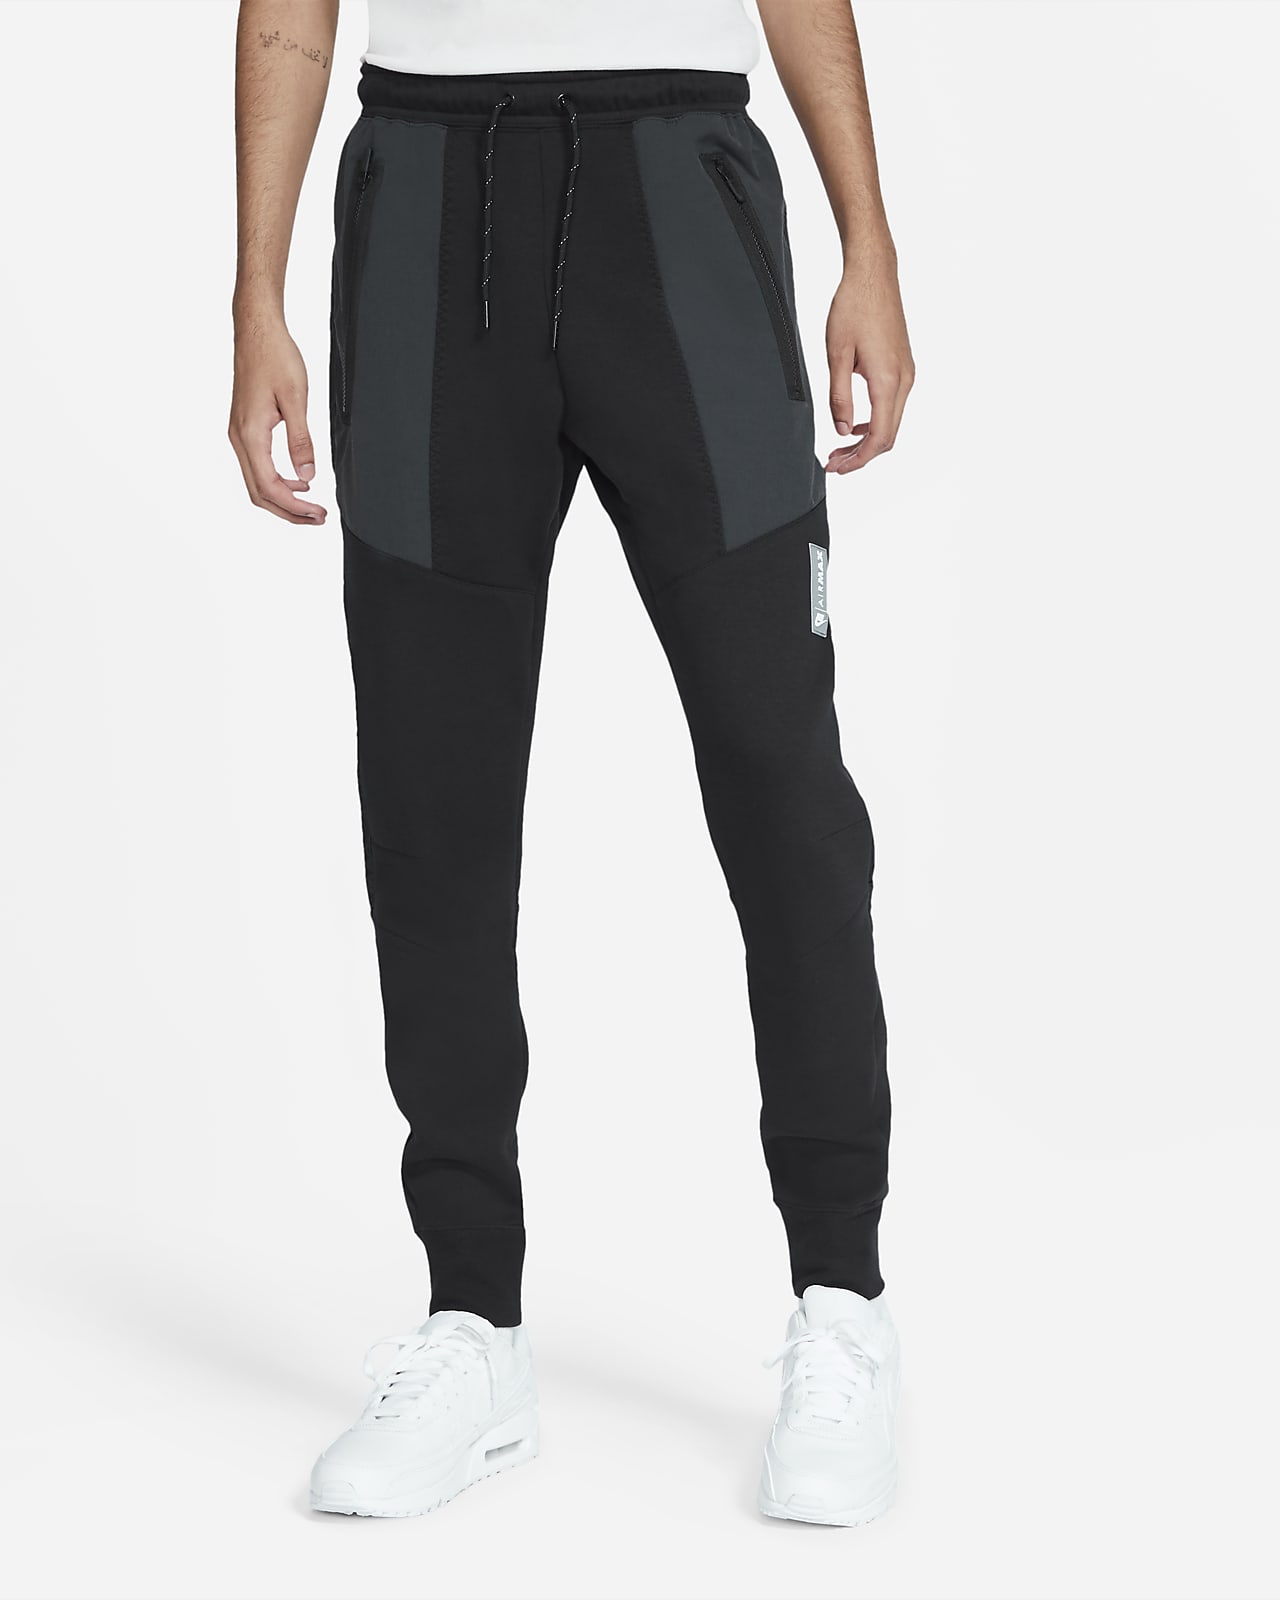 Nike Sportswear Air Max Men's Fleece Trousers